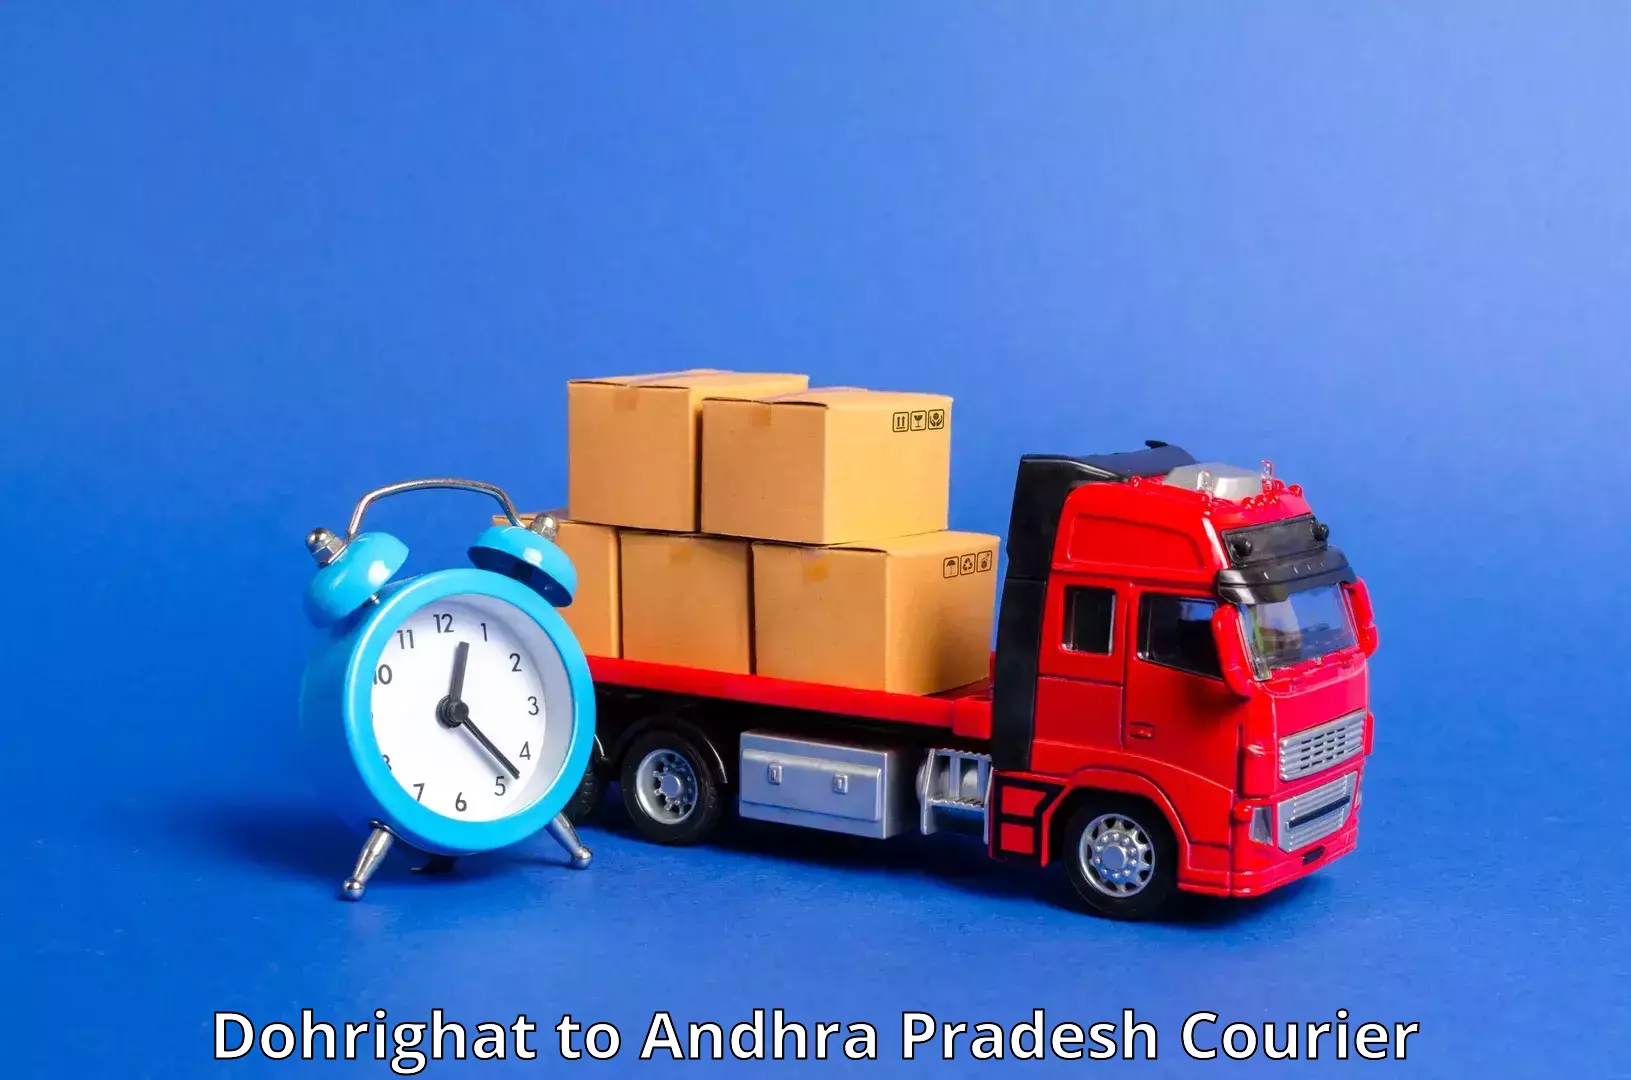 Affordable parcel service Dohrighat to Palakonda